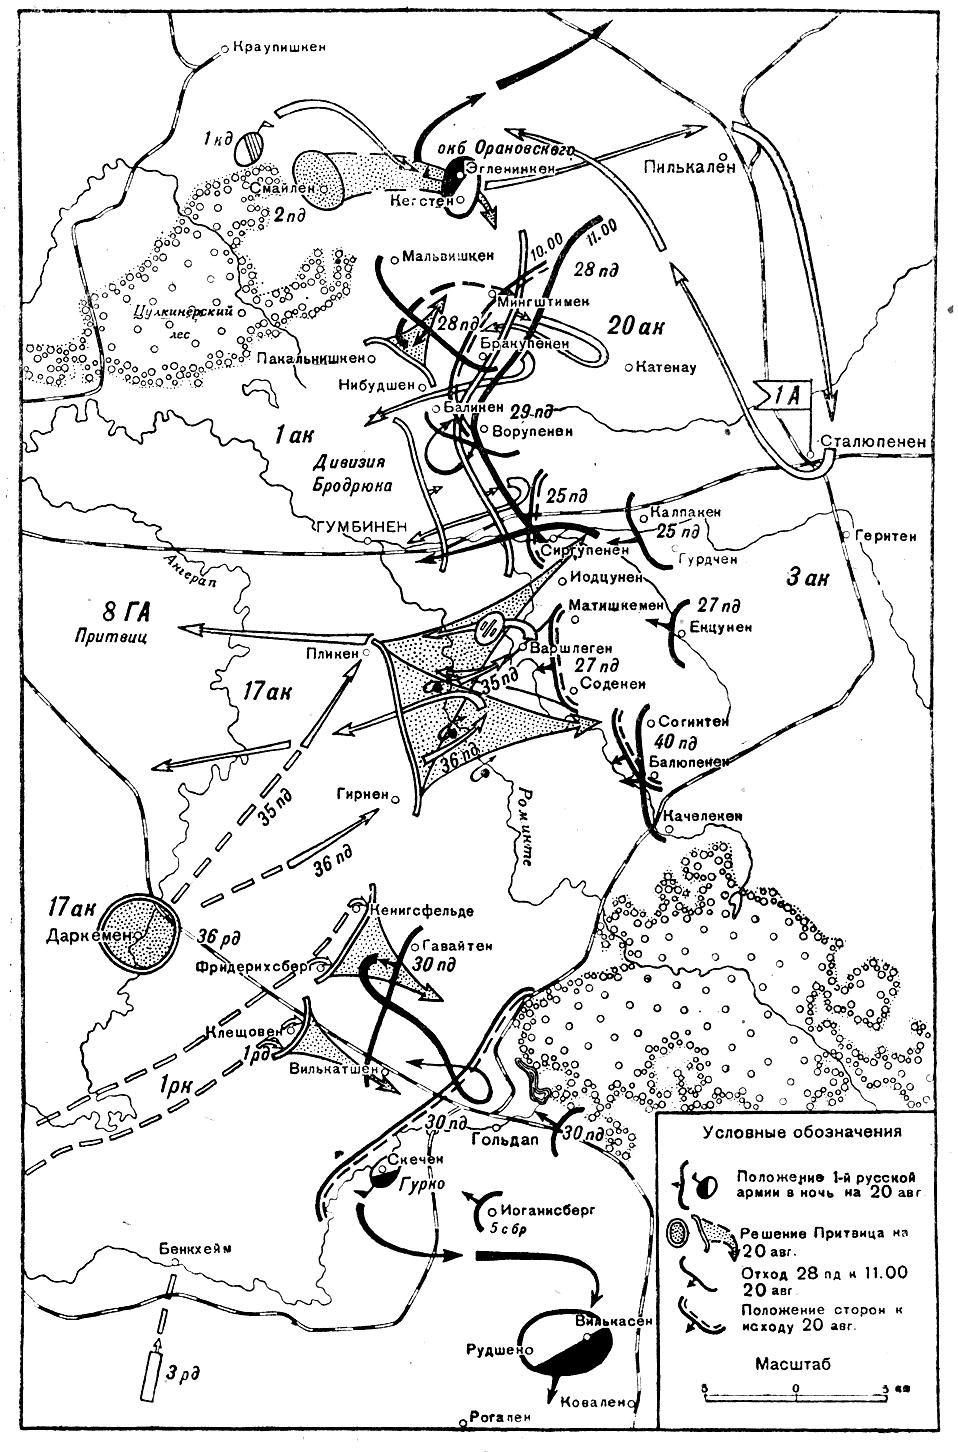 Гумбинен - Гольдап. Сражение 20 августа 1914 г.